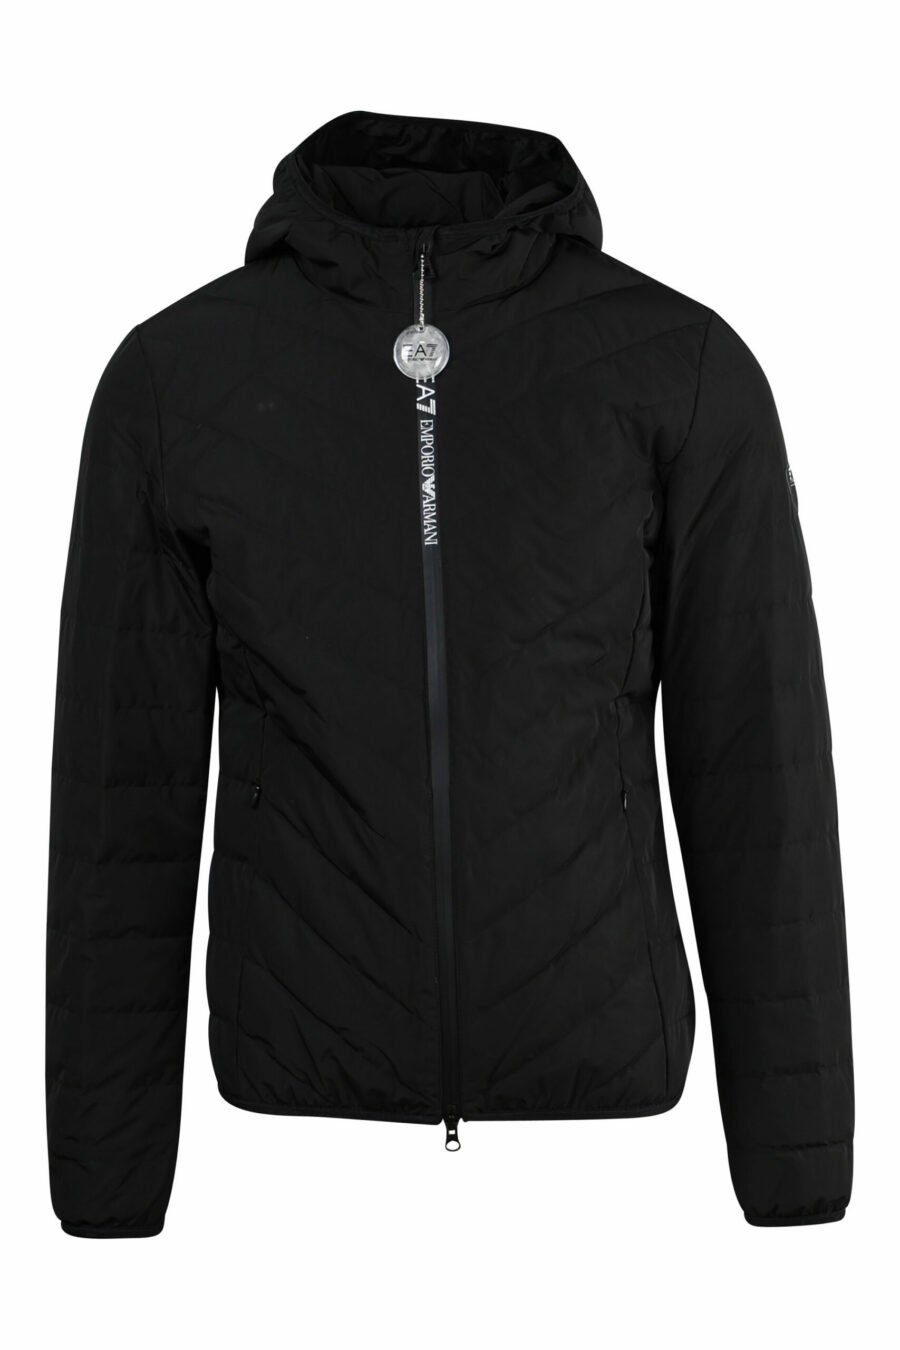 Schwarze Windbreaker-Jacke mit Kapuze und vertikalem "lux identity"-Logo - 8057767519568 skaliert